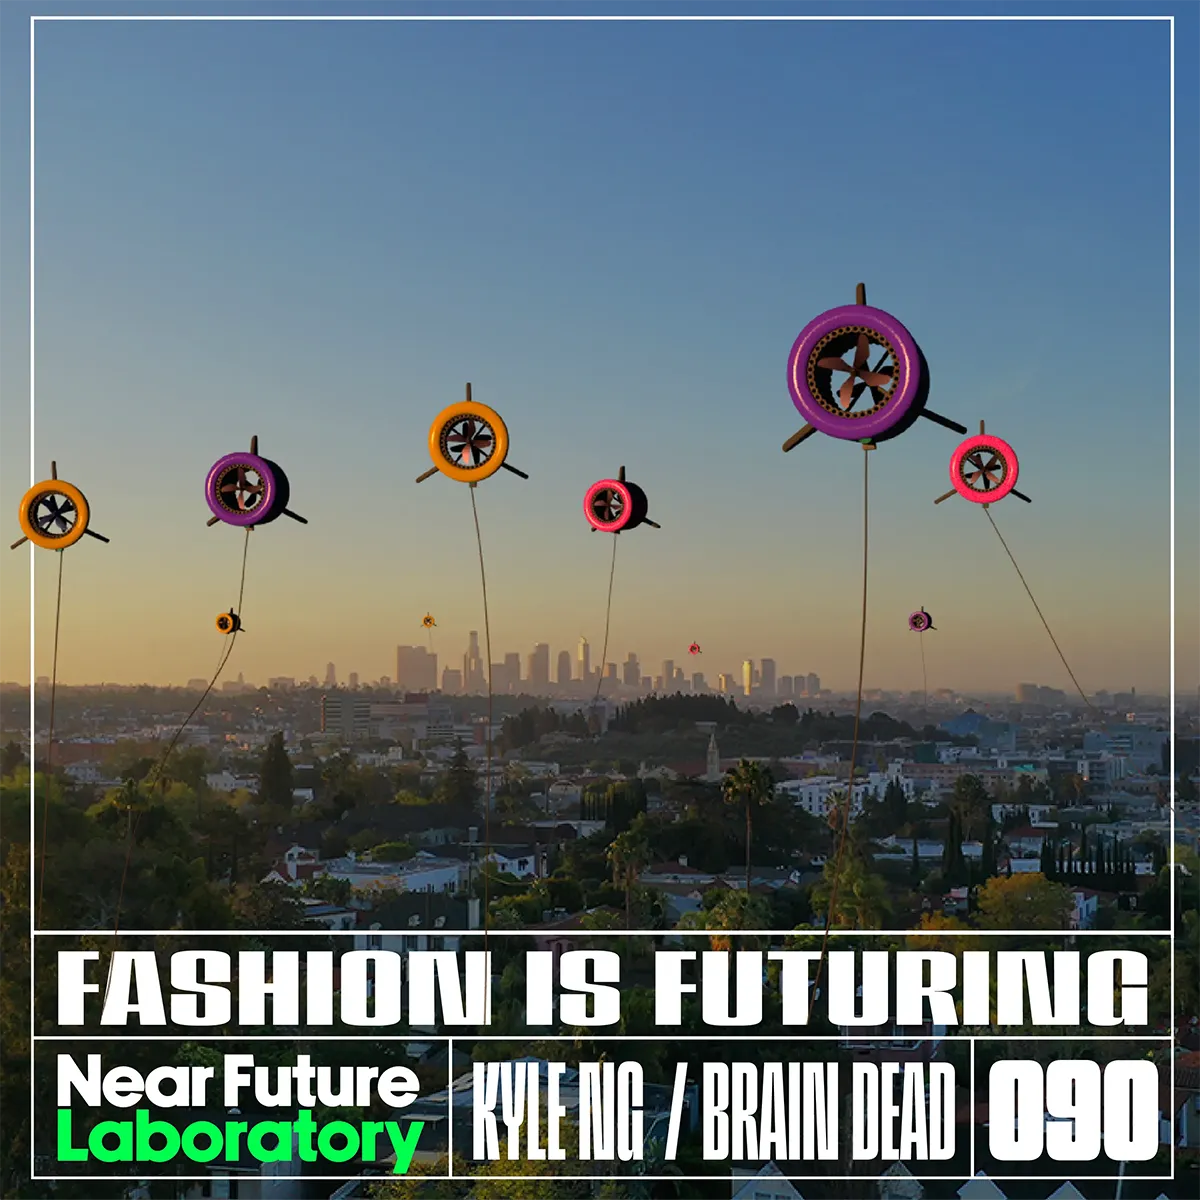 Near Future Laboratory Podcast Episode 090 Cover Image